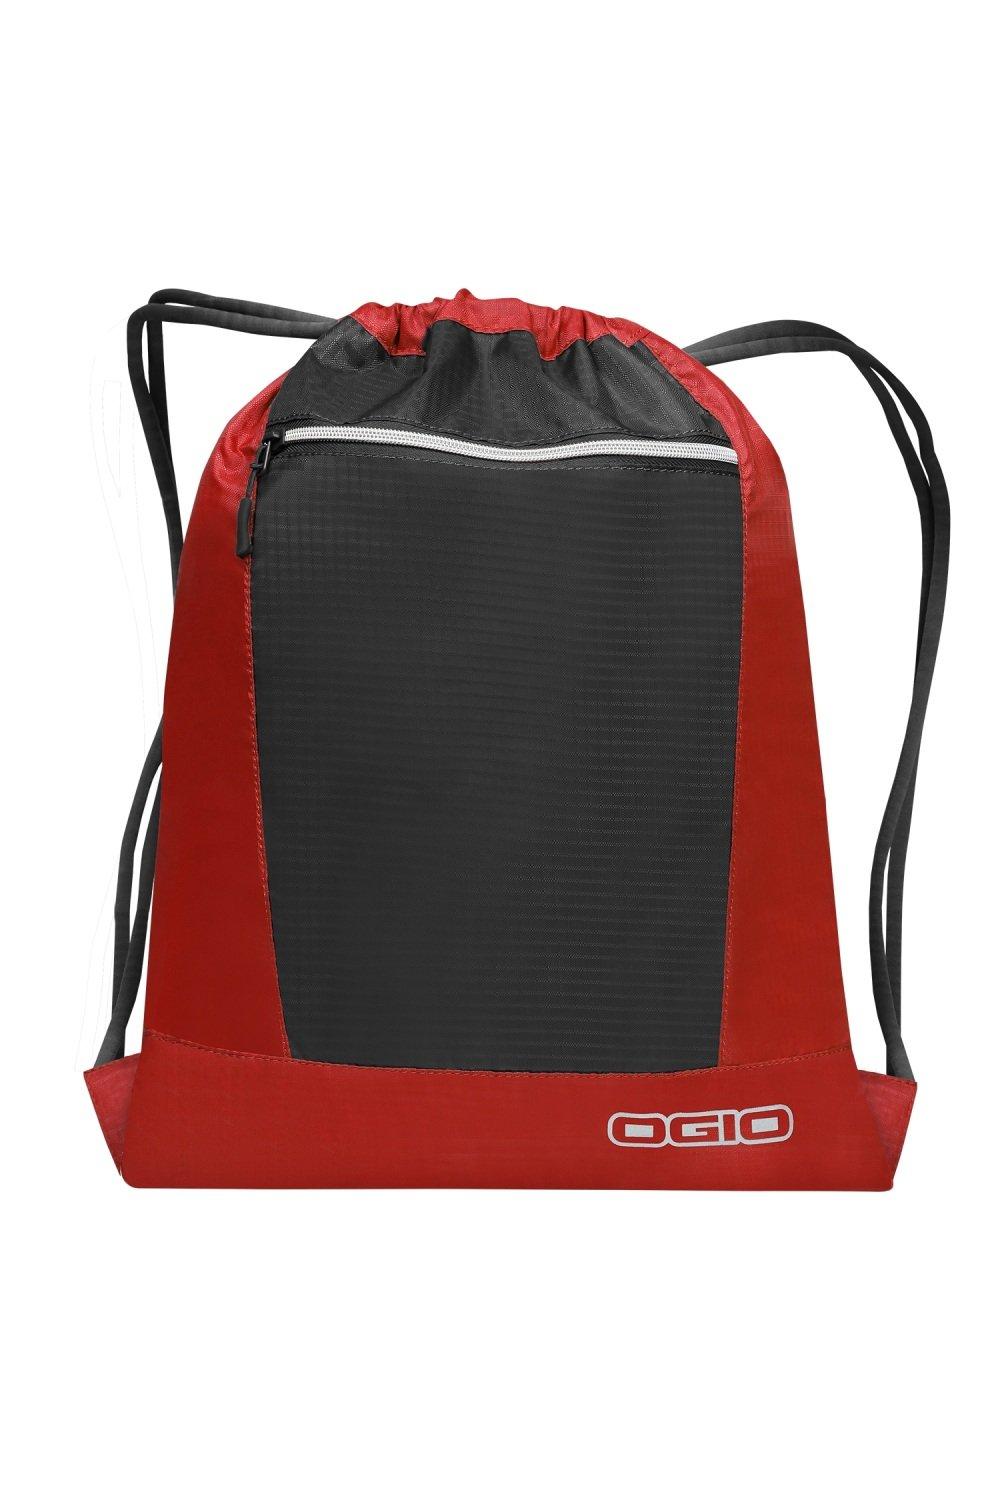 Сумка Endurance Pulse на шнурке (2 шт.) Ogio, красный сумка endurance pulse на шнурке ogio синий